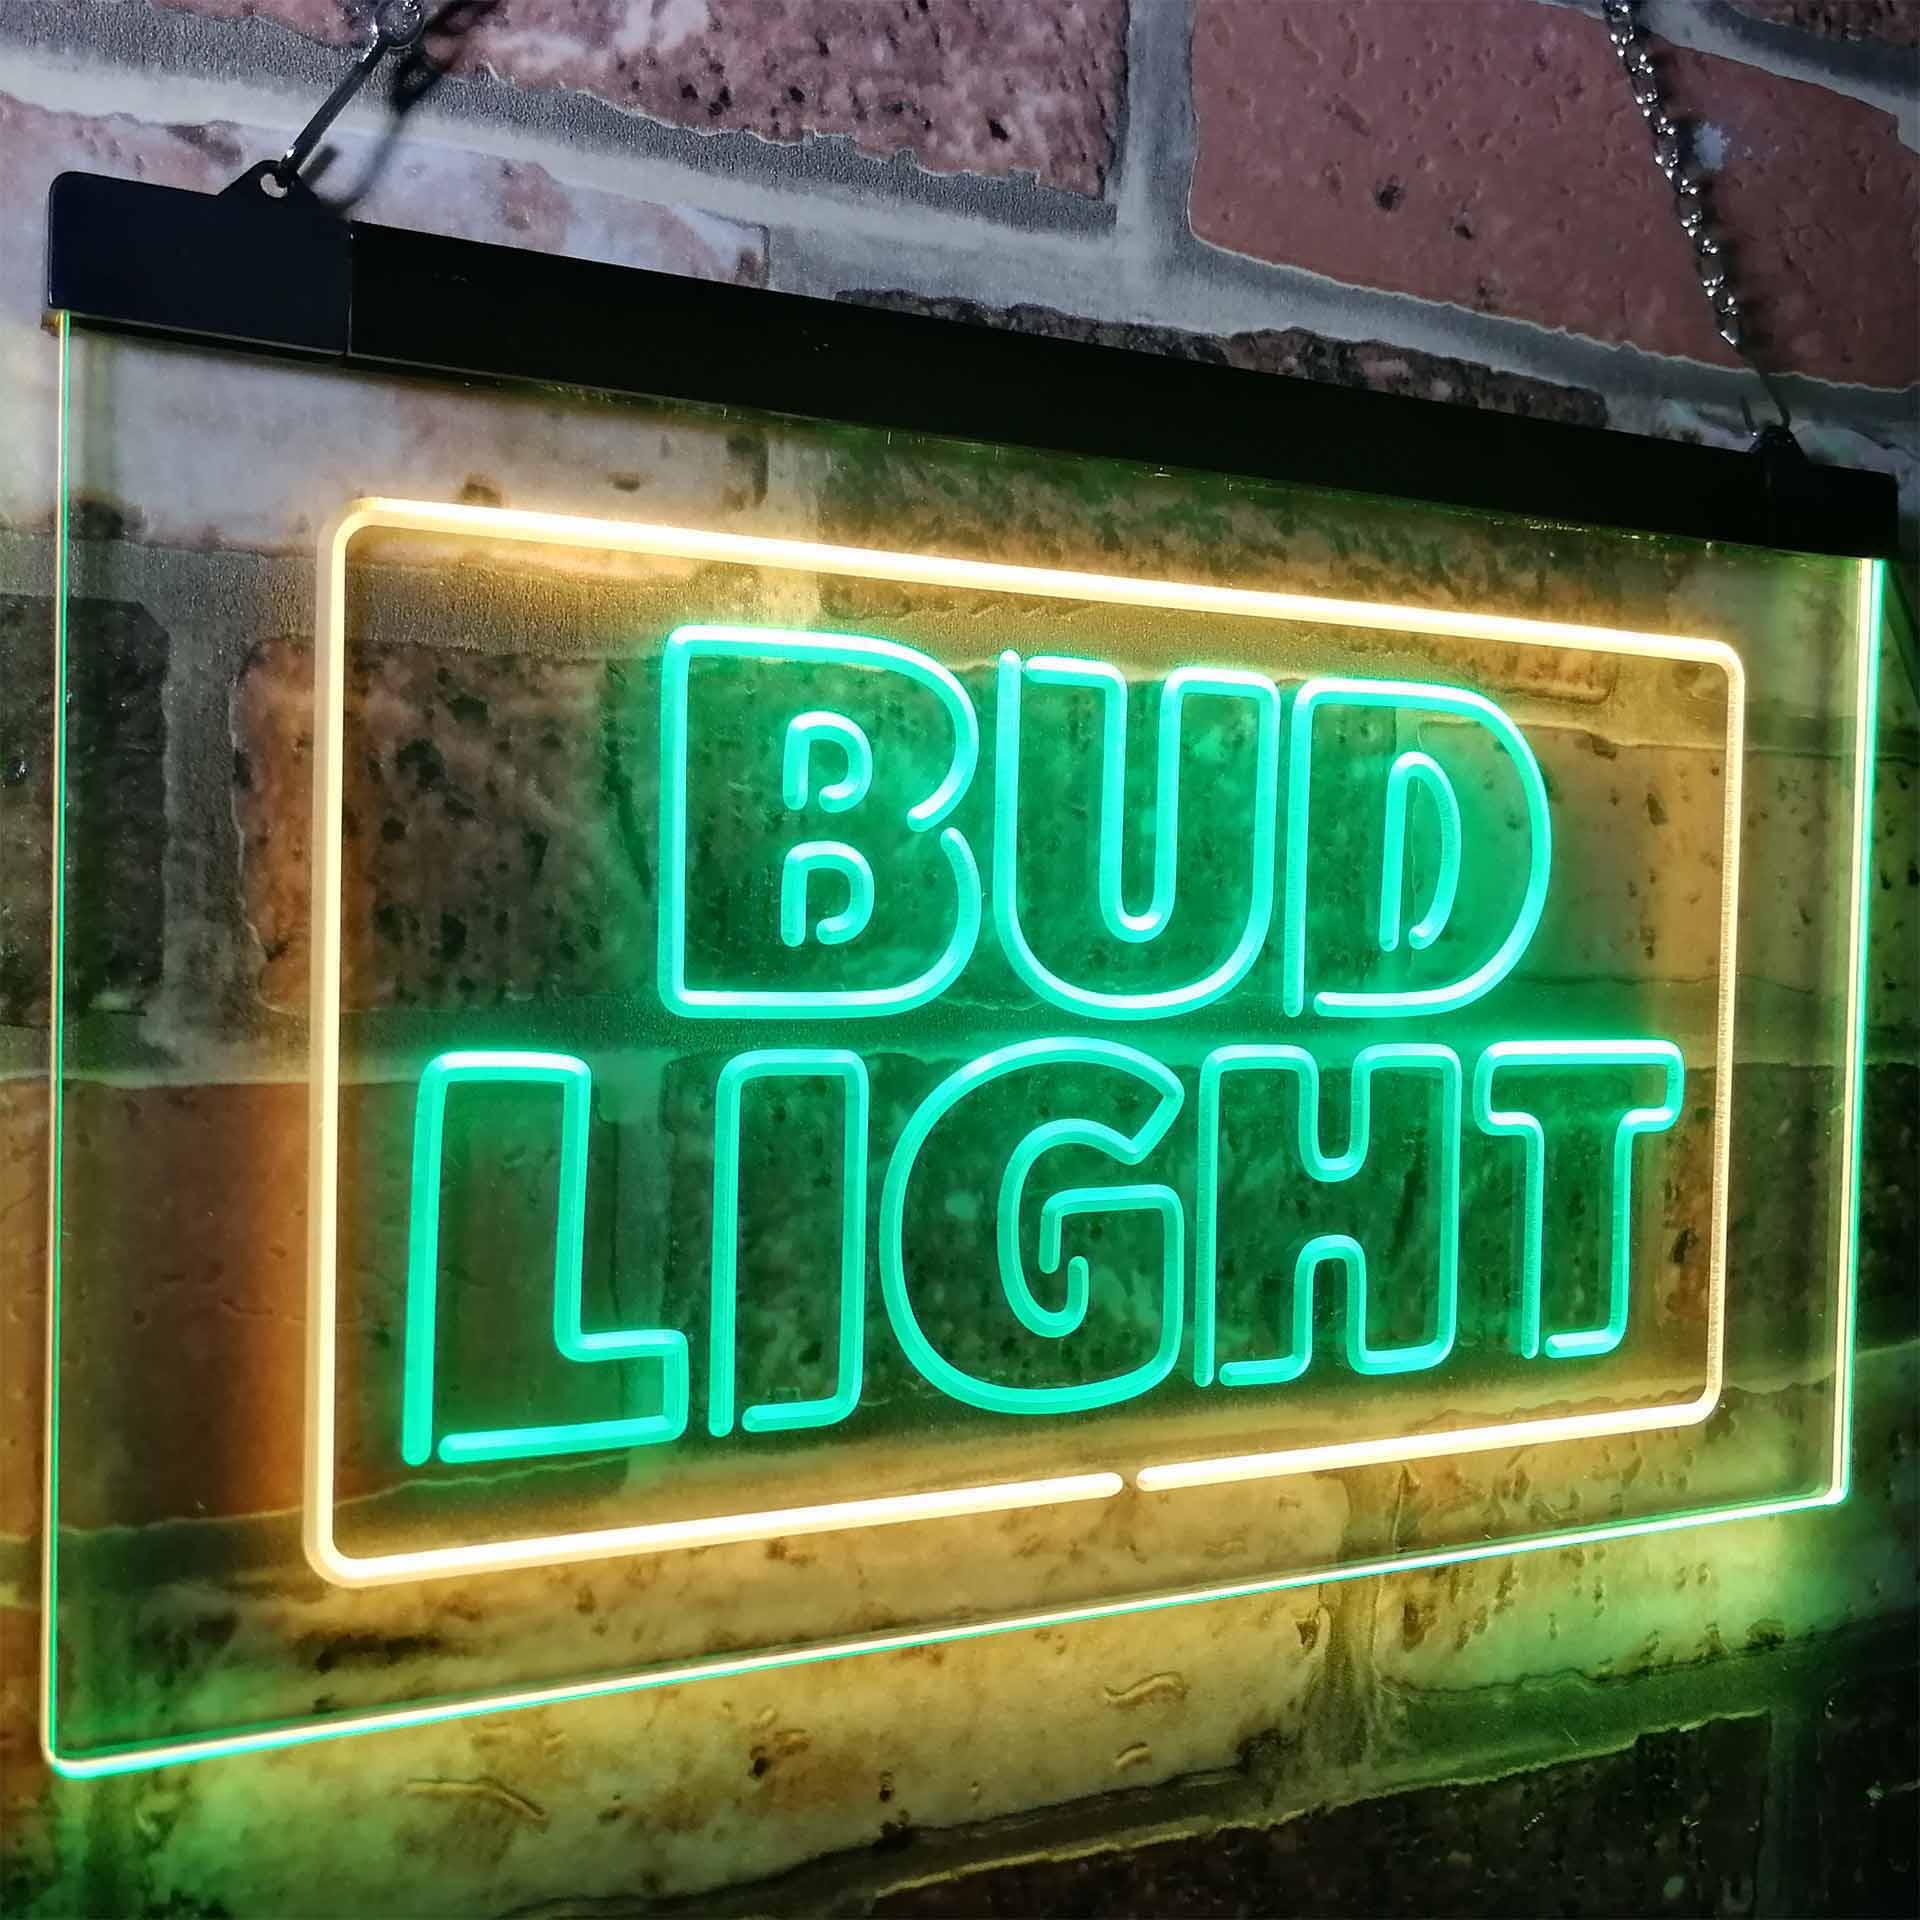 Buds Lights New Beer Bar LED Neon Sign